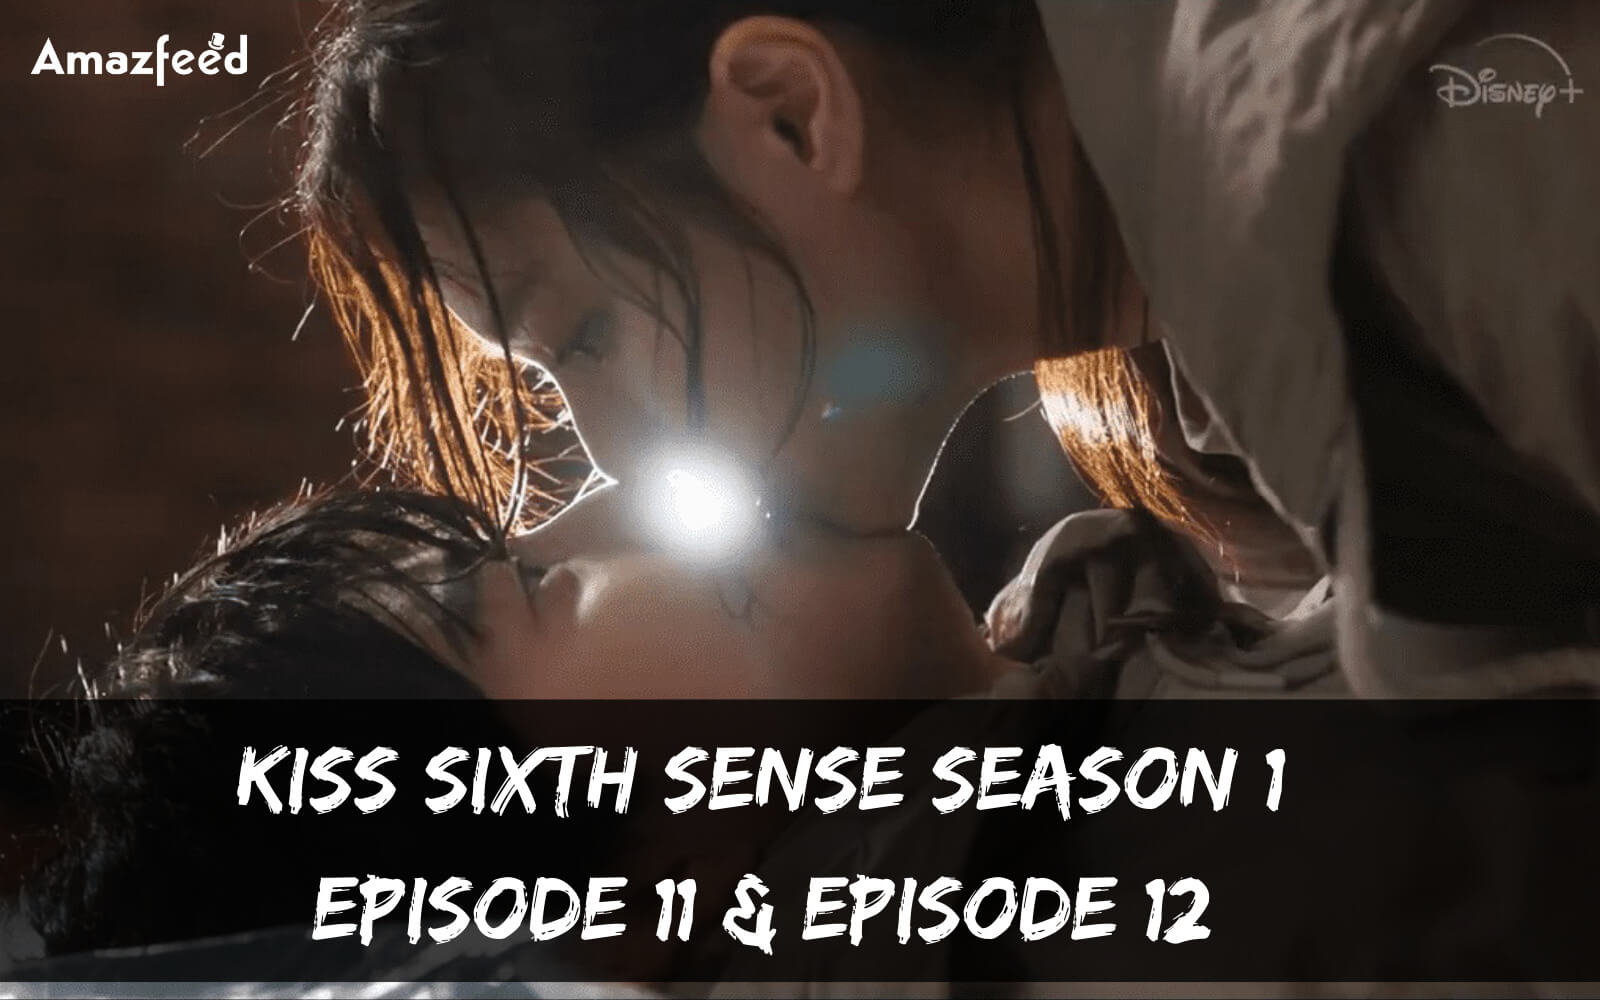 Kiss Sixth Sense Season 1 Episode 11 release date